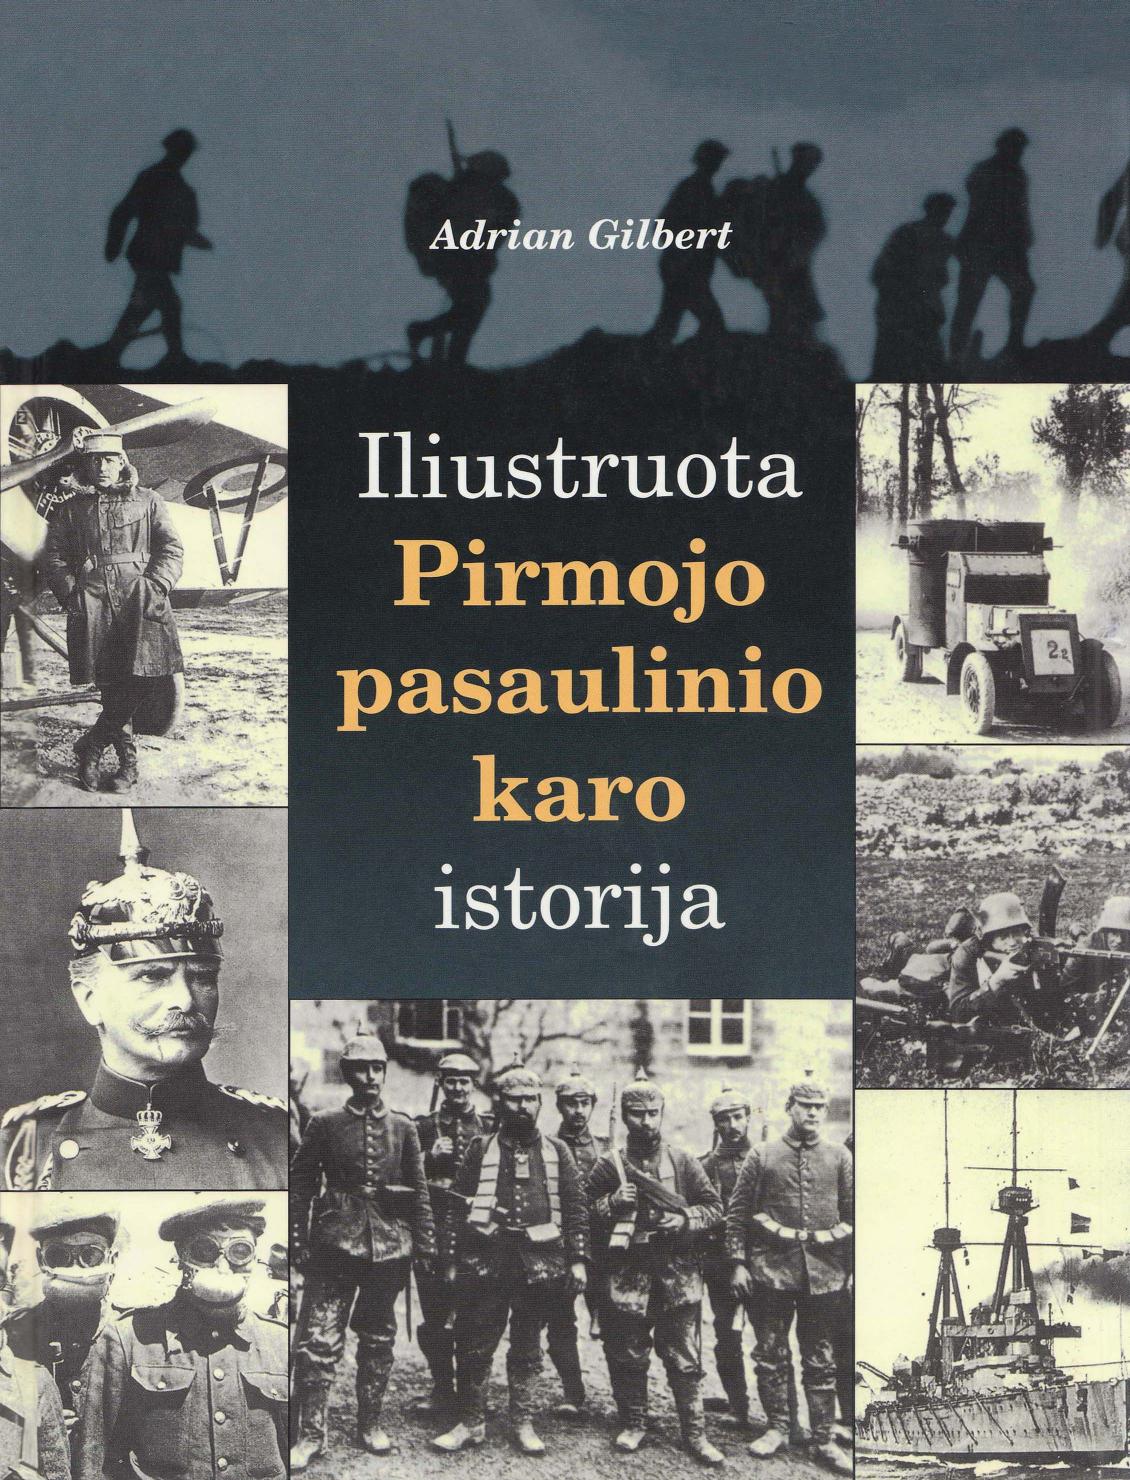 Adrian Gilbert - Iliustruota Pirmojo pasaulinio karo istorija (2001 LT)